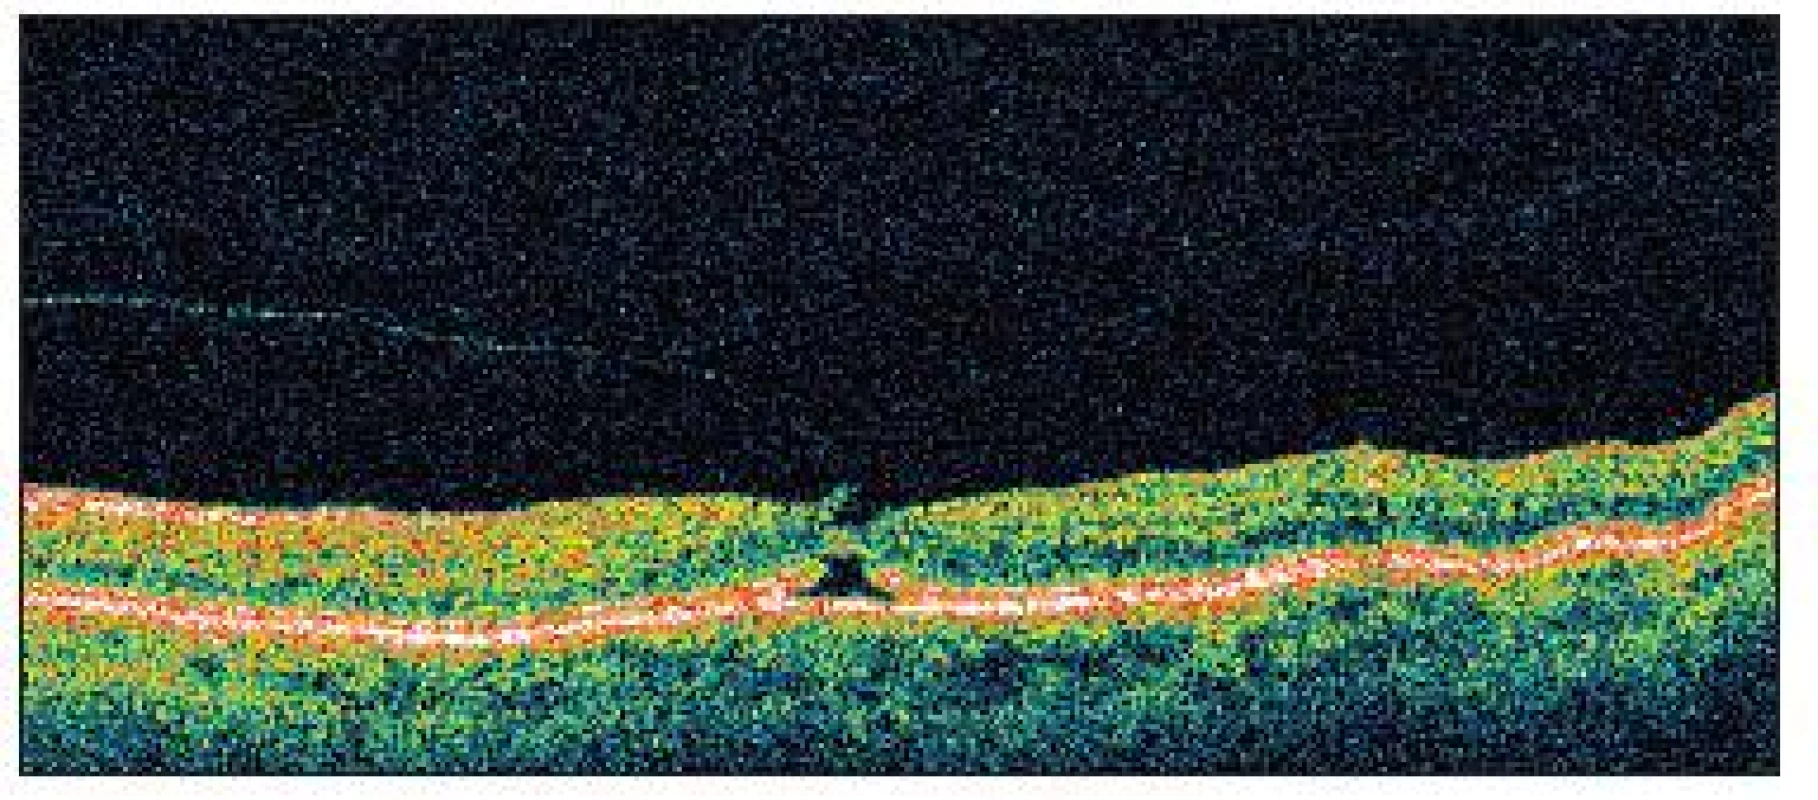 OCT zobrazuje u pacientky č. 2 anomálnu abláciu zadného sklovca v oblasti foveoly s úponom sklovca, ktorý ťahá vytrhnutý prúžok neuroretiny, oploštenie foveálnej depresie a cystoidnú zmenu v hĺbke neuroretiny a tiež narušenie kontinuity vrstvy junkcie fotoreceptorov nad pigmentovým epitelom sietnice